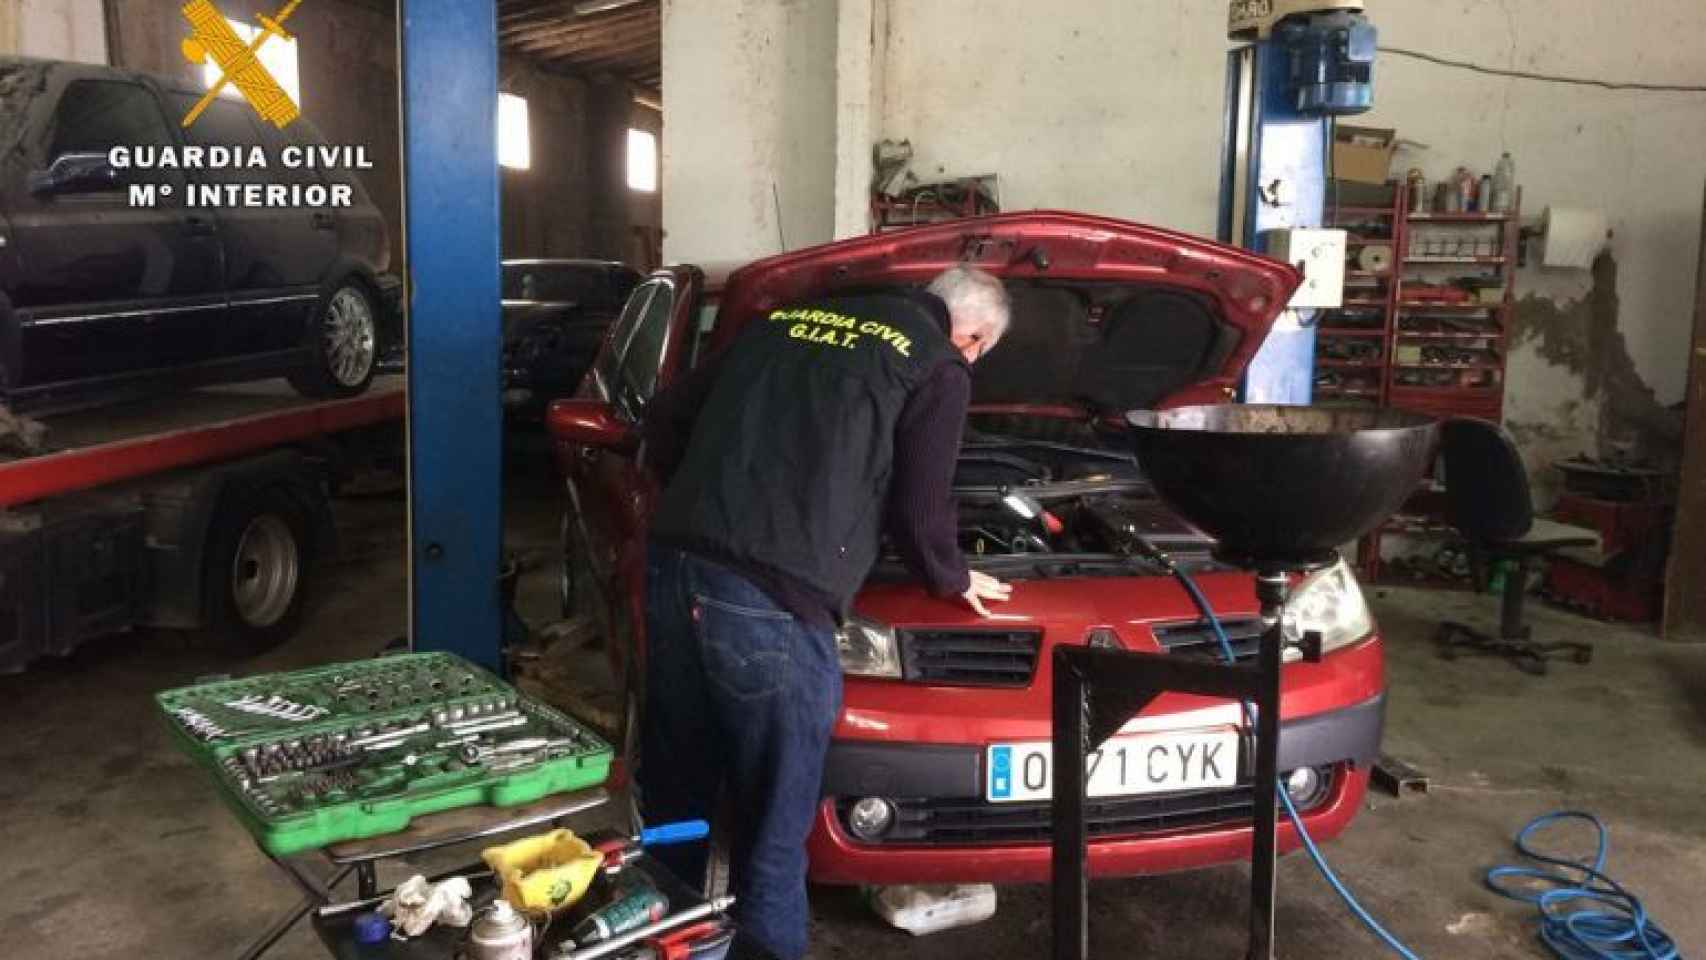 Un guardia civil inspecciona un coche durante una intervención en un taller